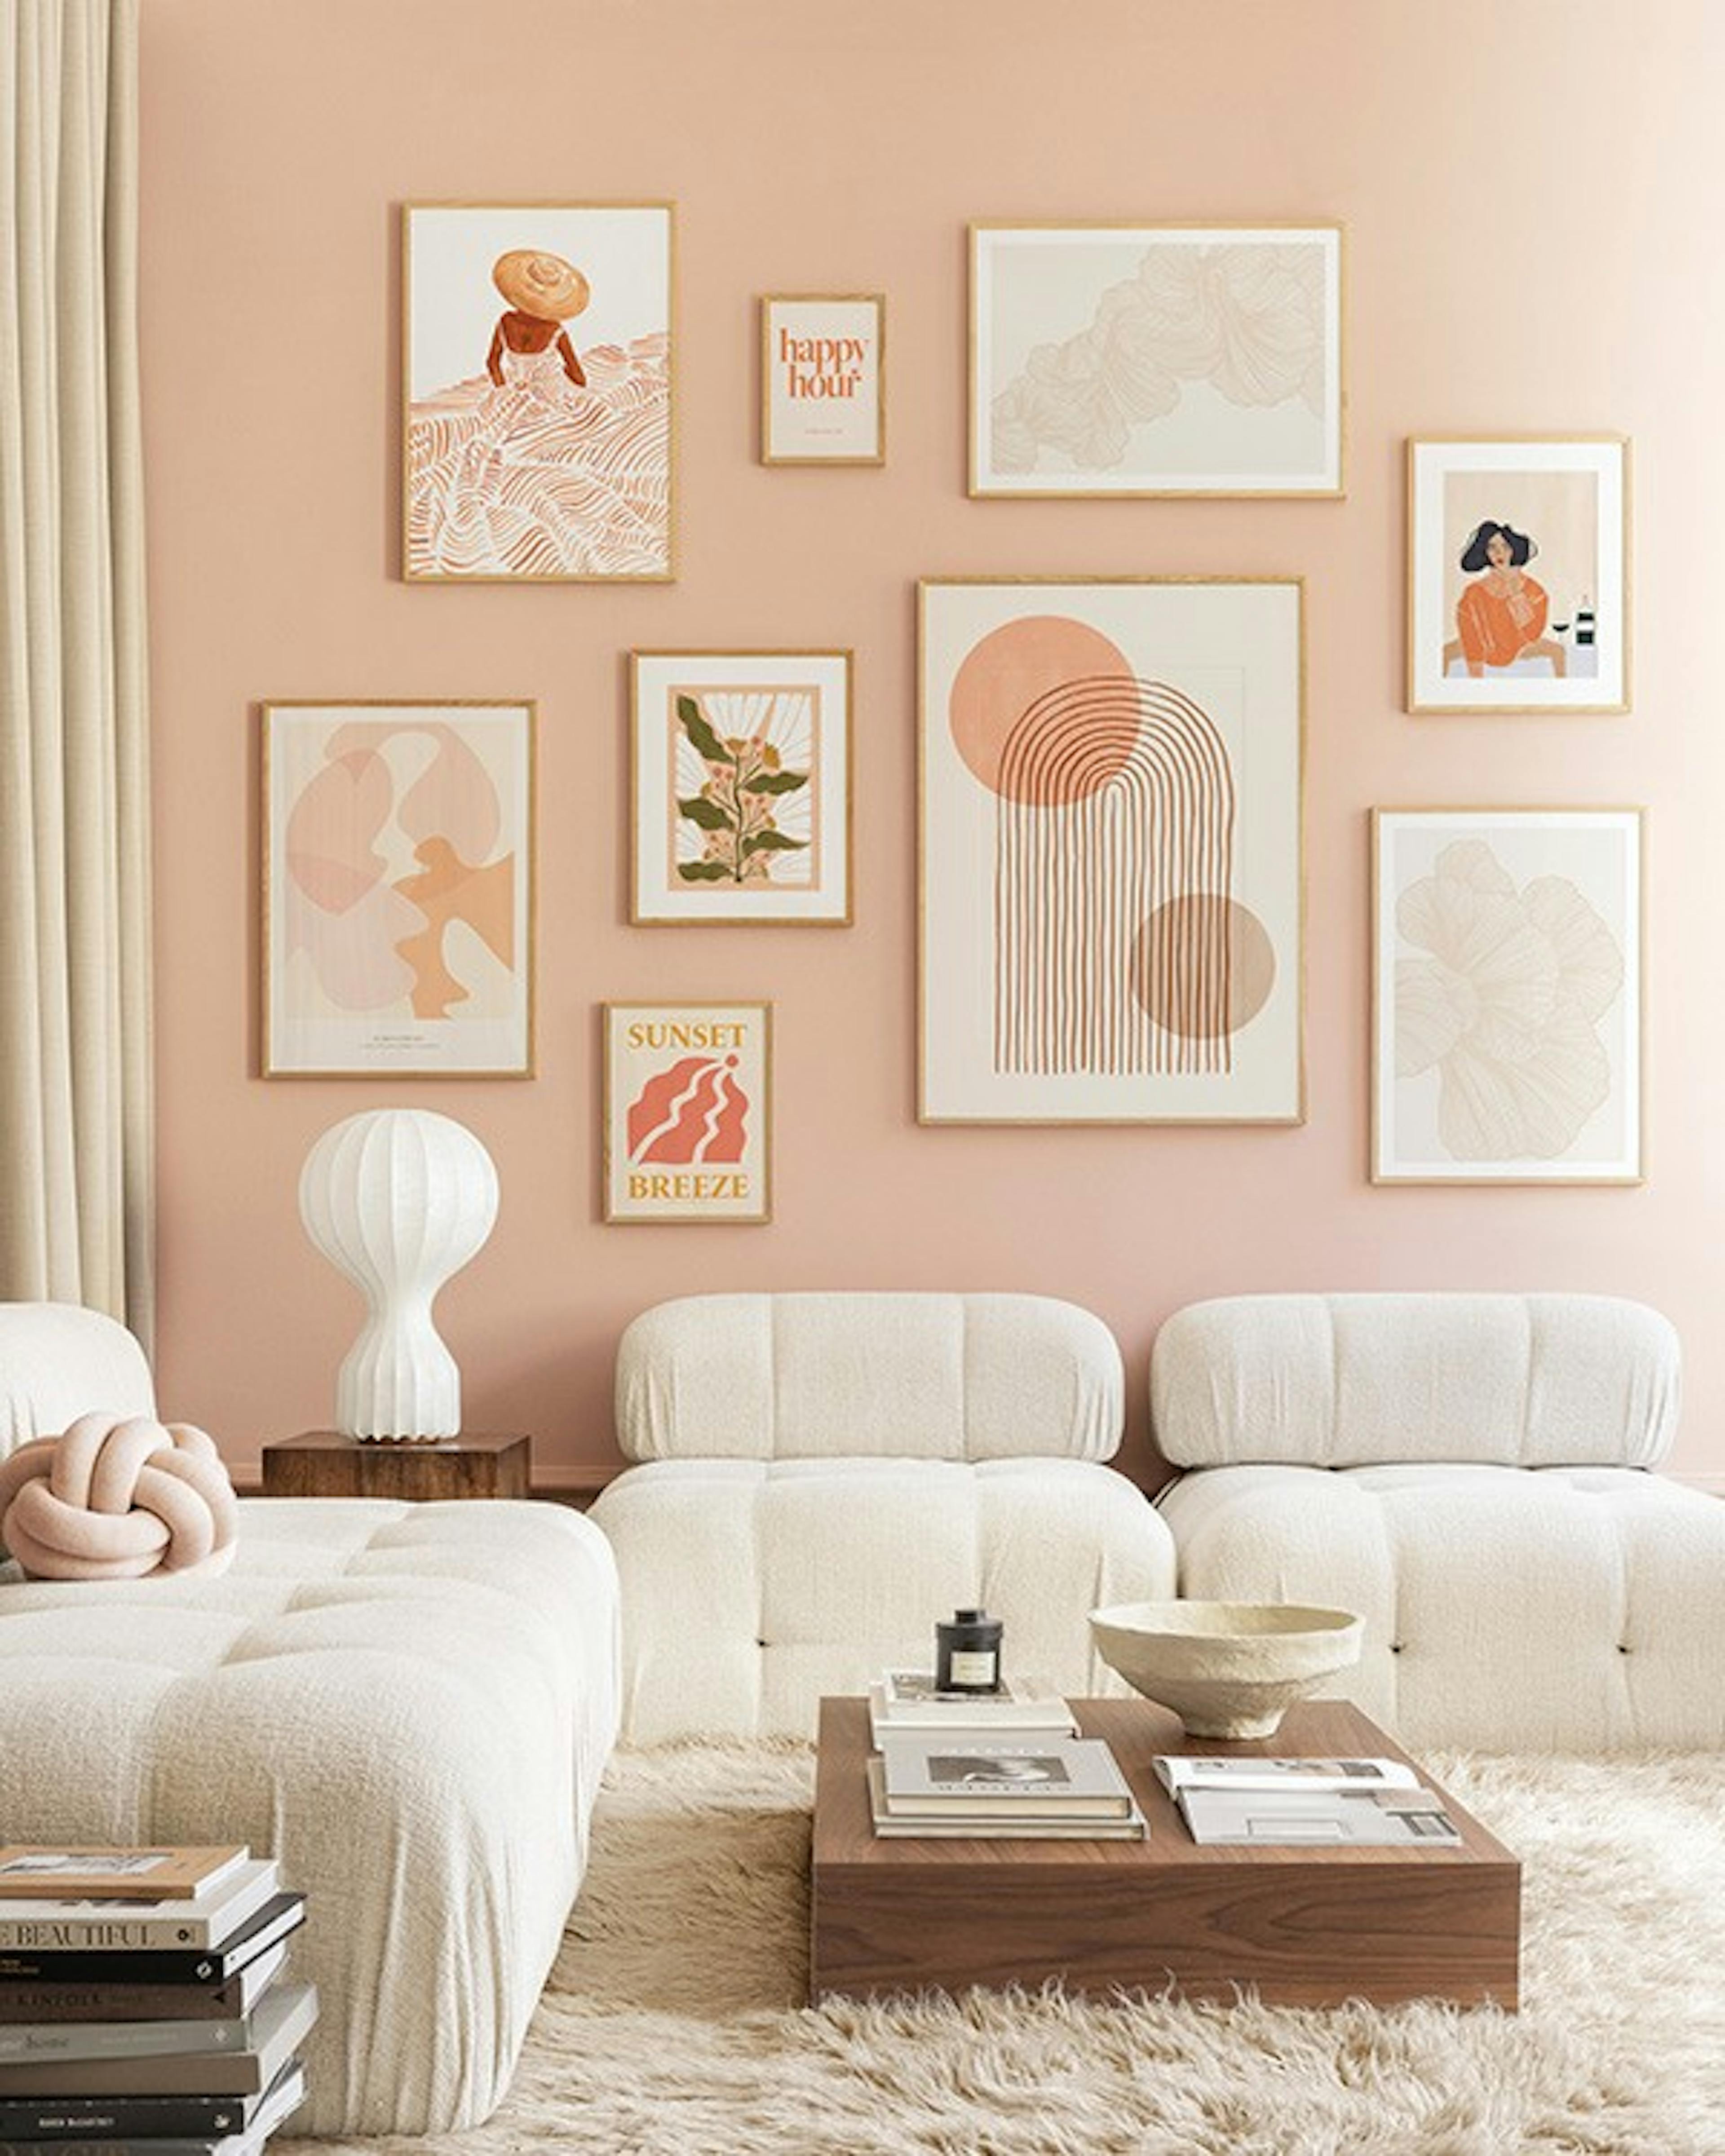 Peachy livingroom gallery wall